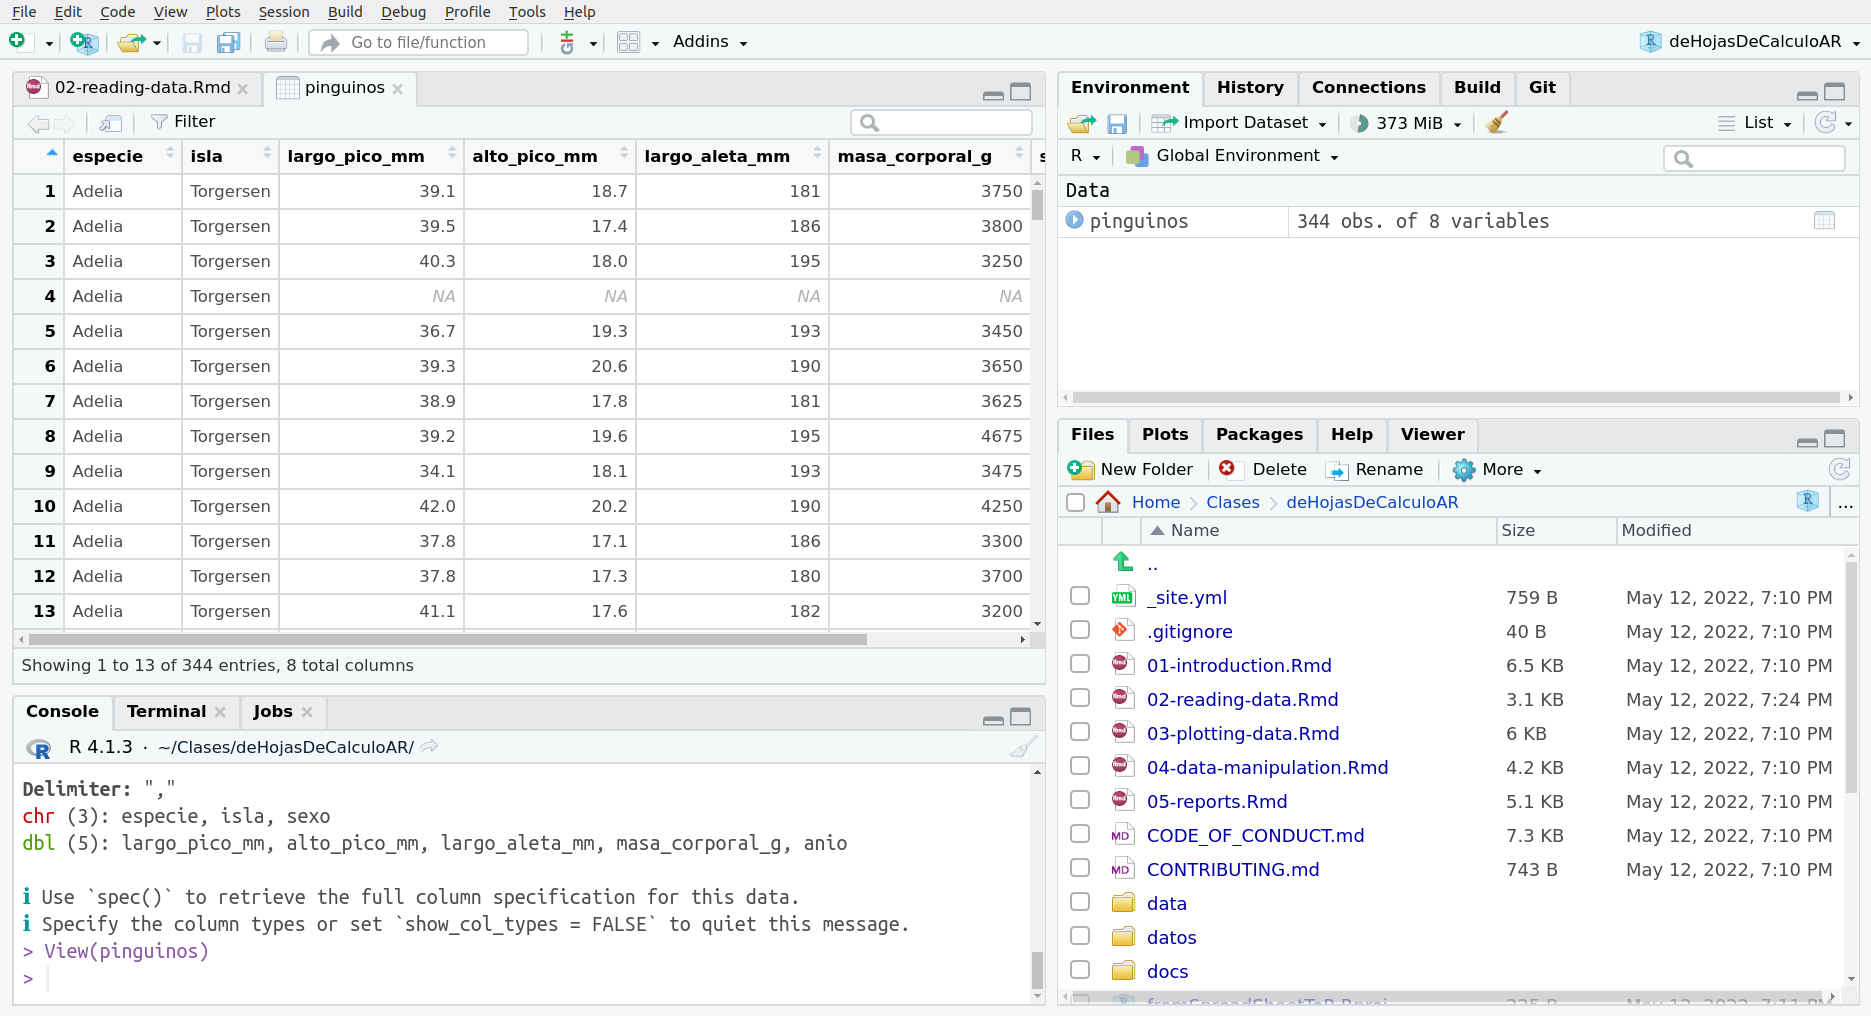 La pestaña de visualización del data.frame con los datos de pinguinos luego de llamar a la función View()